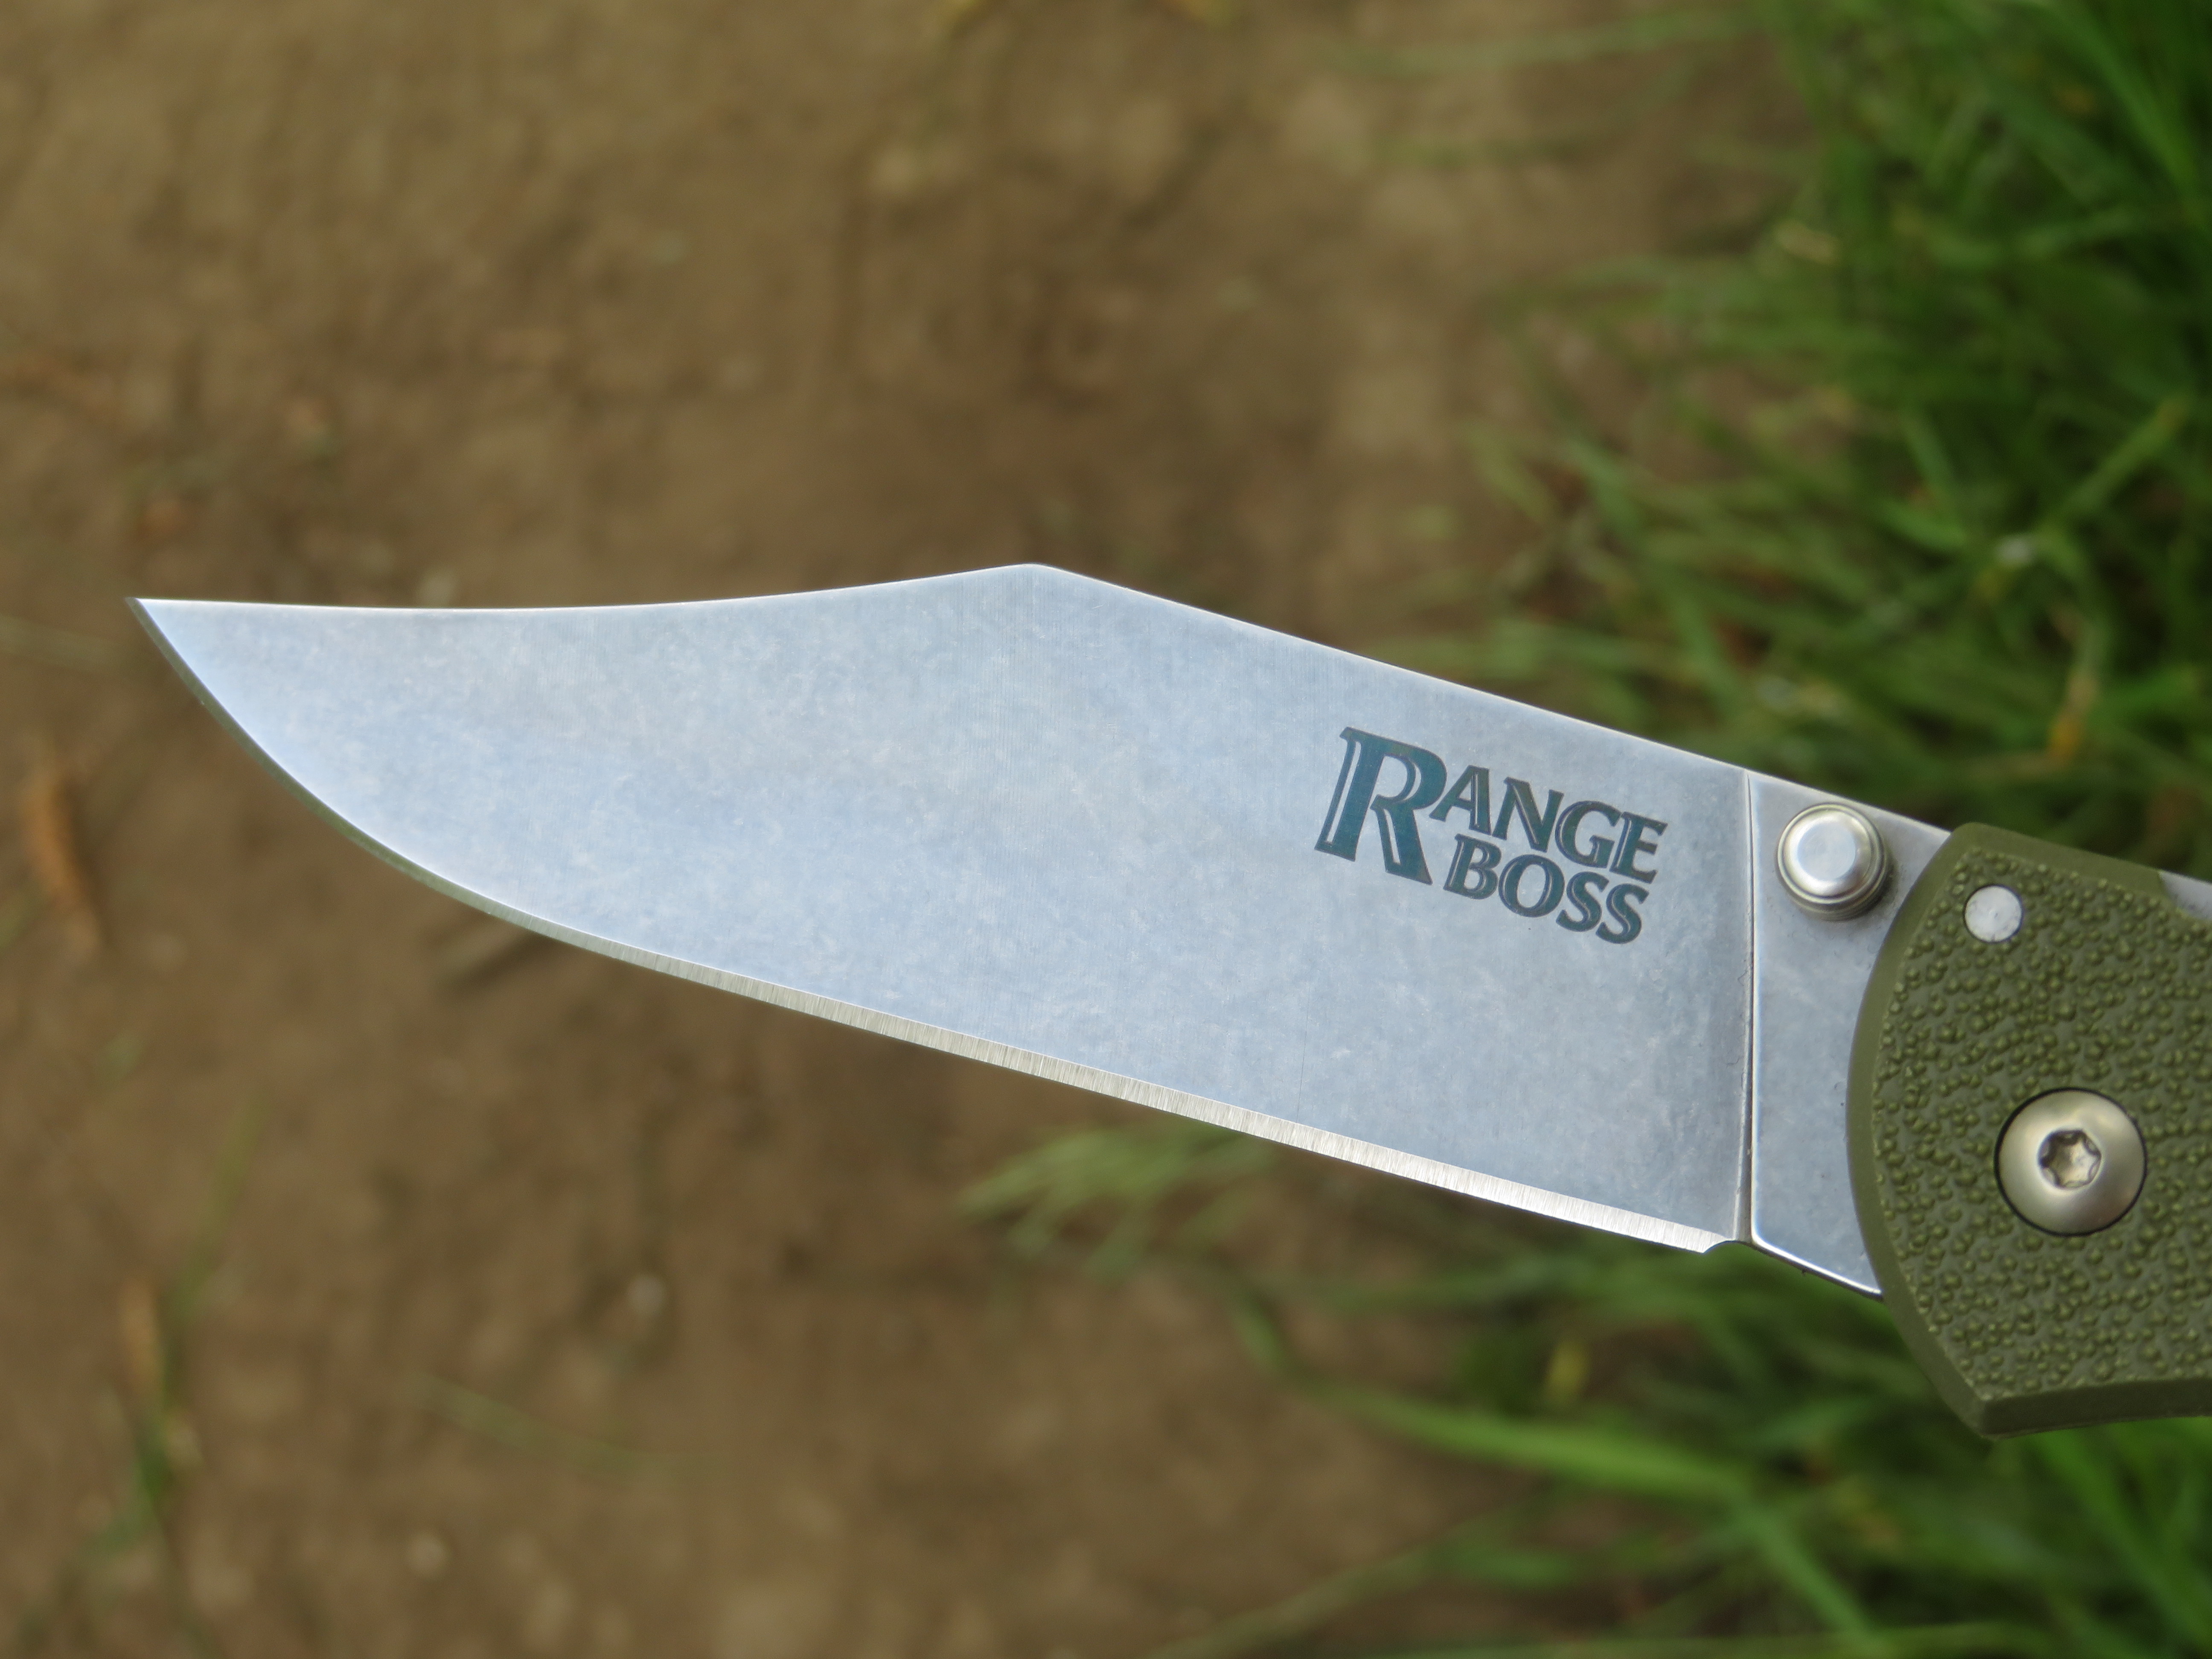 Detail čepele nože Range Boss od firmy Cold Steel s prohnutým neboli bowie hrotem.